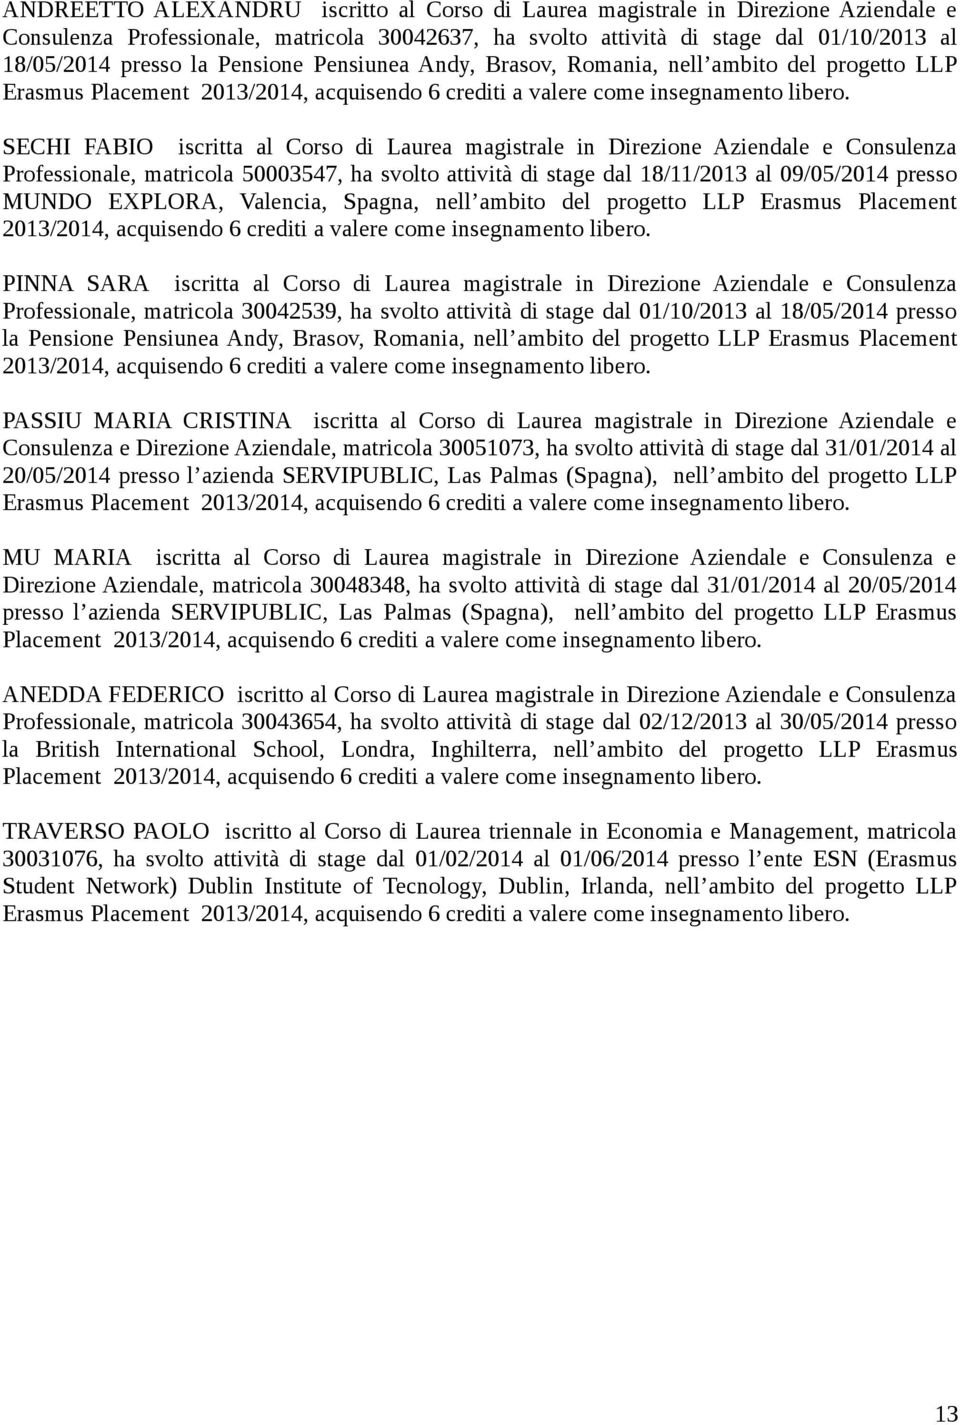 SECHI FABIO iscritta al Corso di Laurea magistrale in Direzione Aziendale e Consulenza Professionale, matricola 50003547, ha svolto attività di stage dal 18/11/2013 al 09/05/2014 presso MUNDO